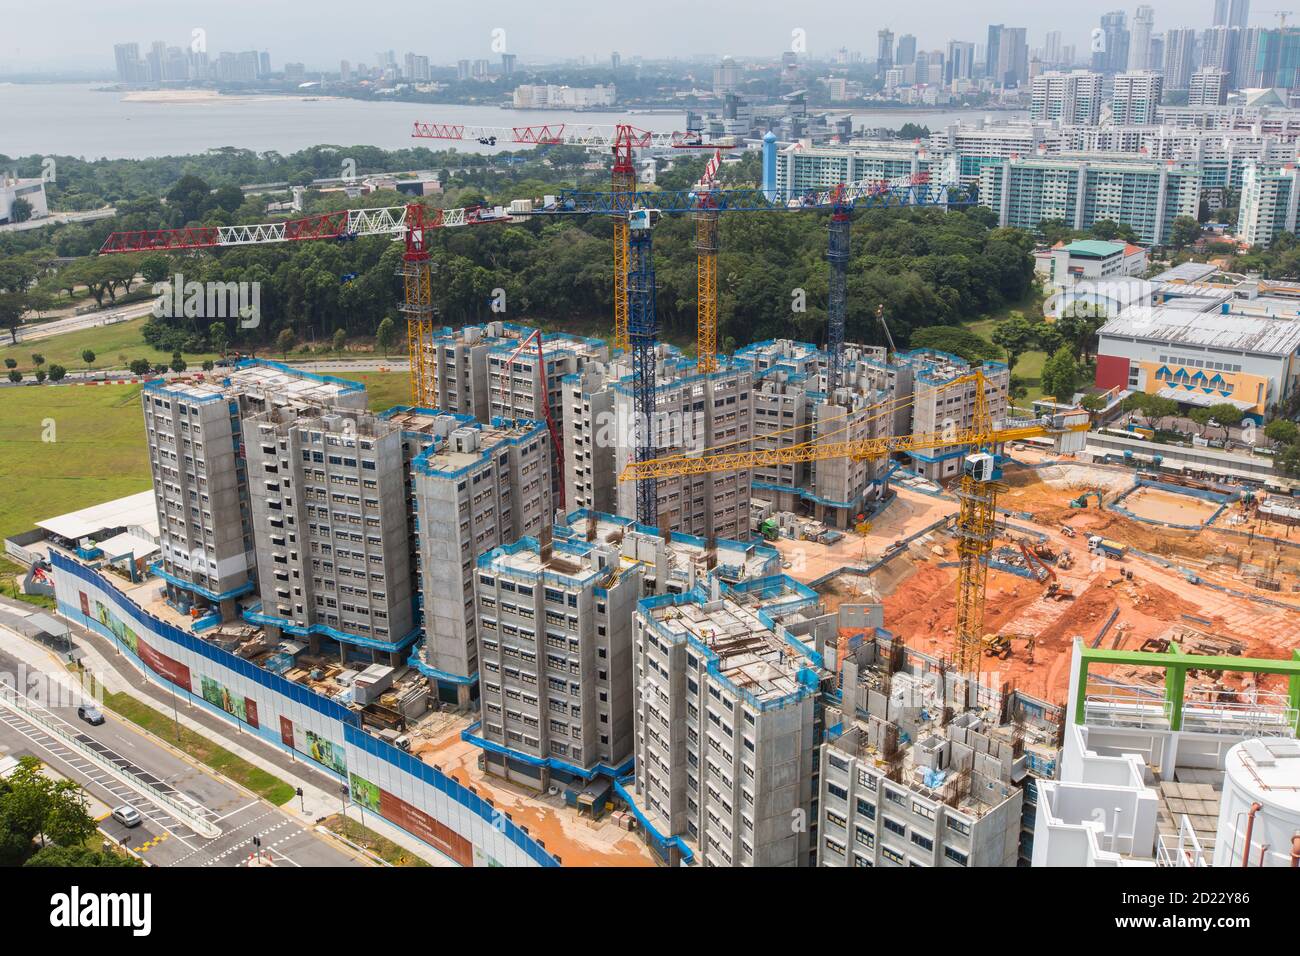 La construction de nouveaux logements est en cours car la construction a été retardée en raison de la pandémie Covid-19, à Singapour. Banque D'Images